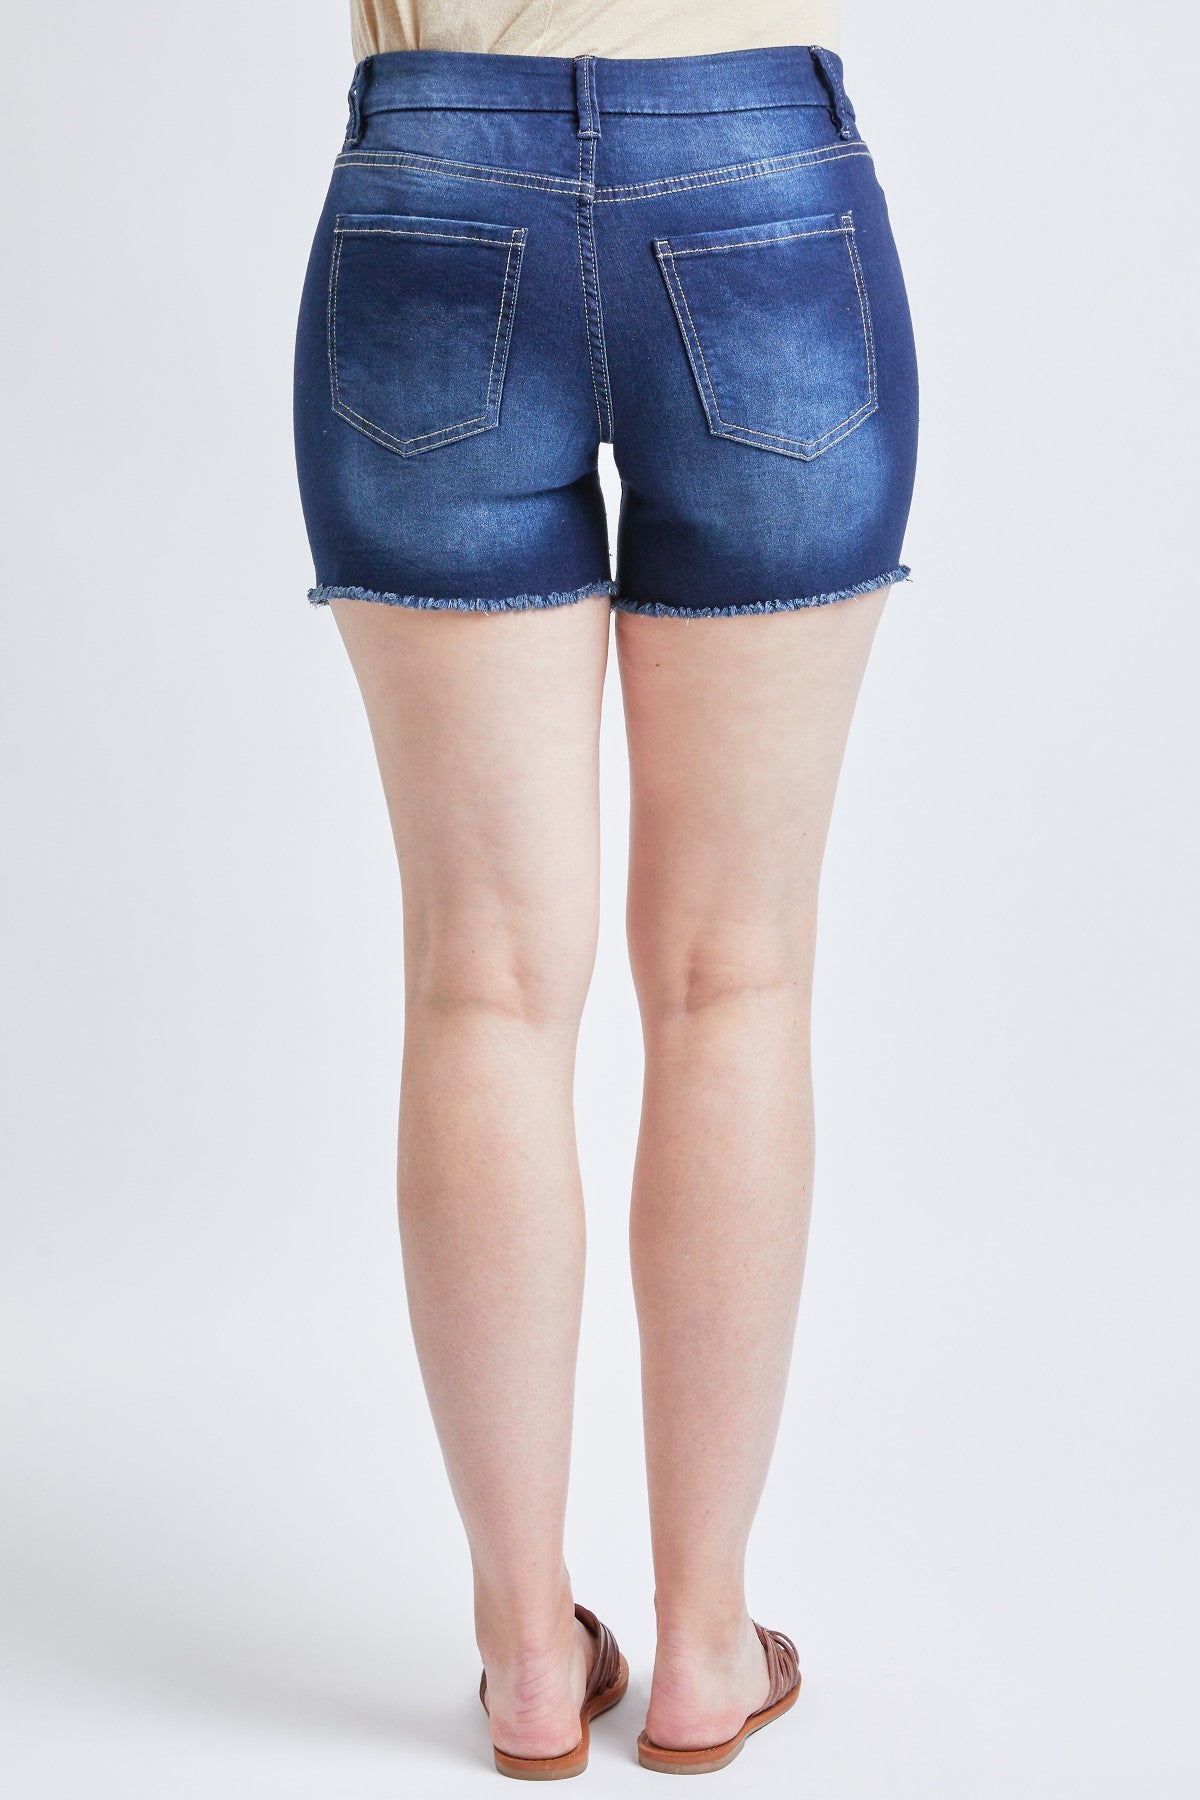 Missy Curvy High Rise Frayed Hem Shorts 12 Pack